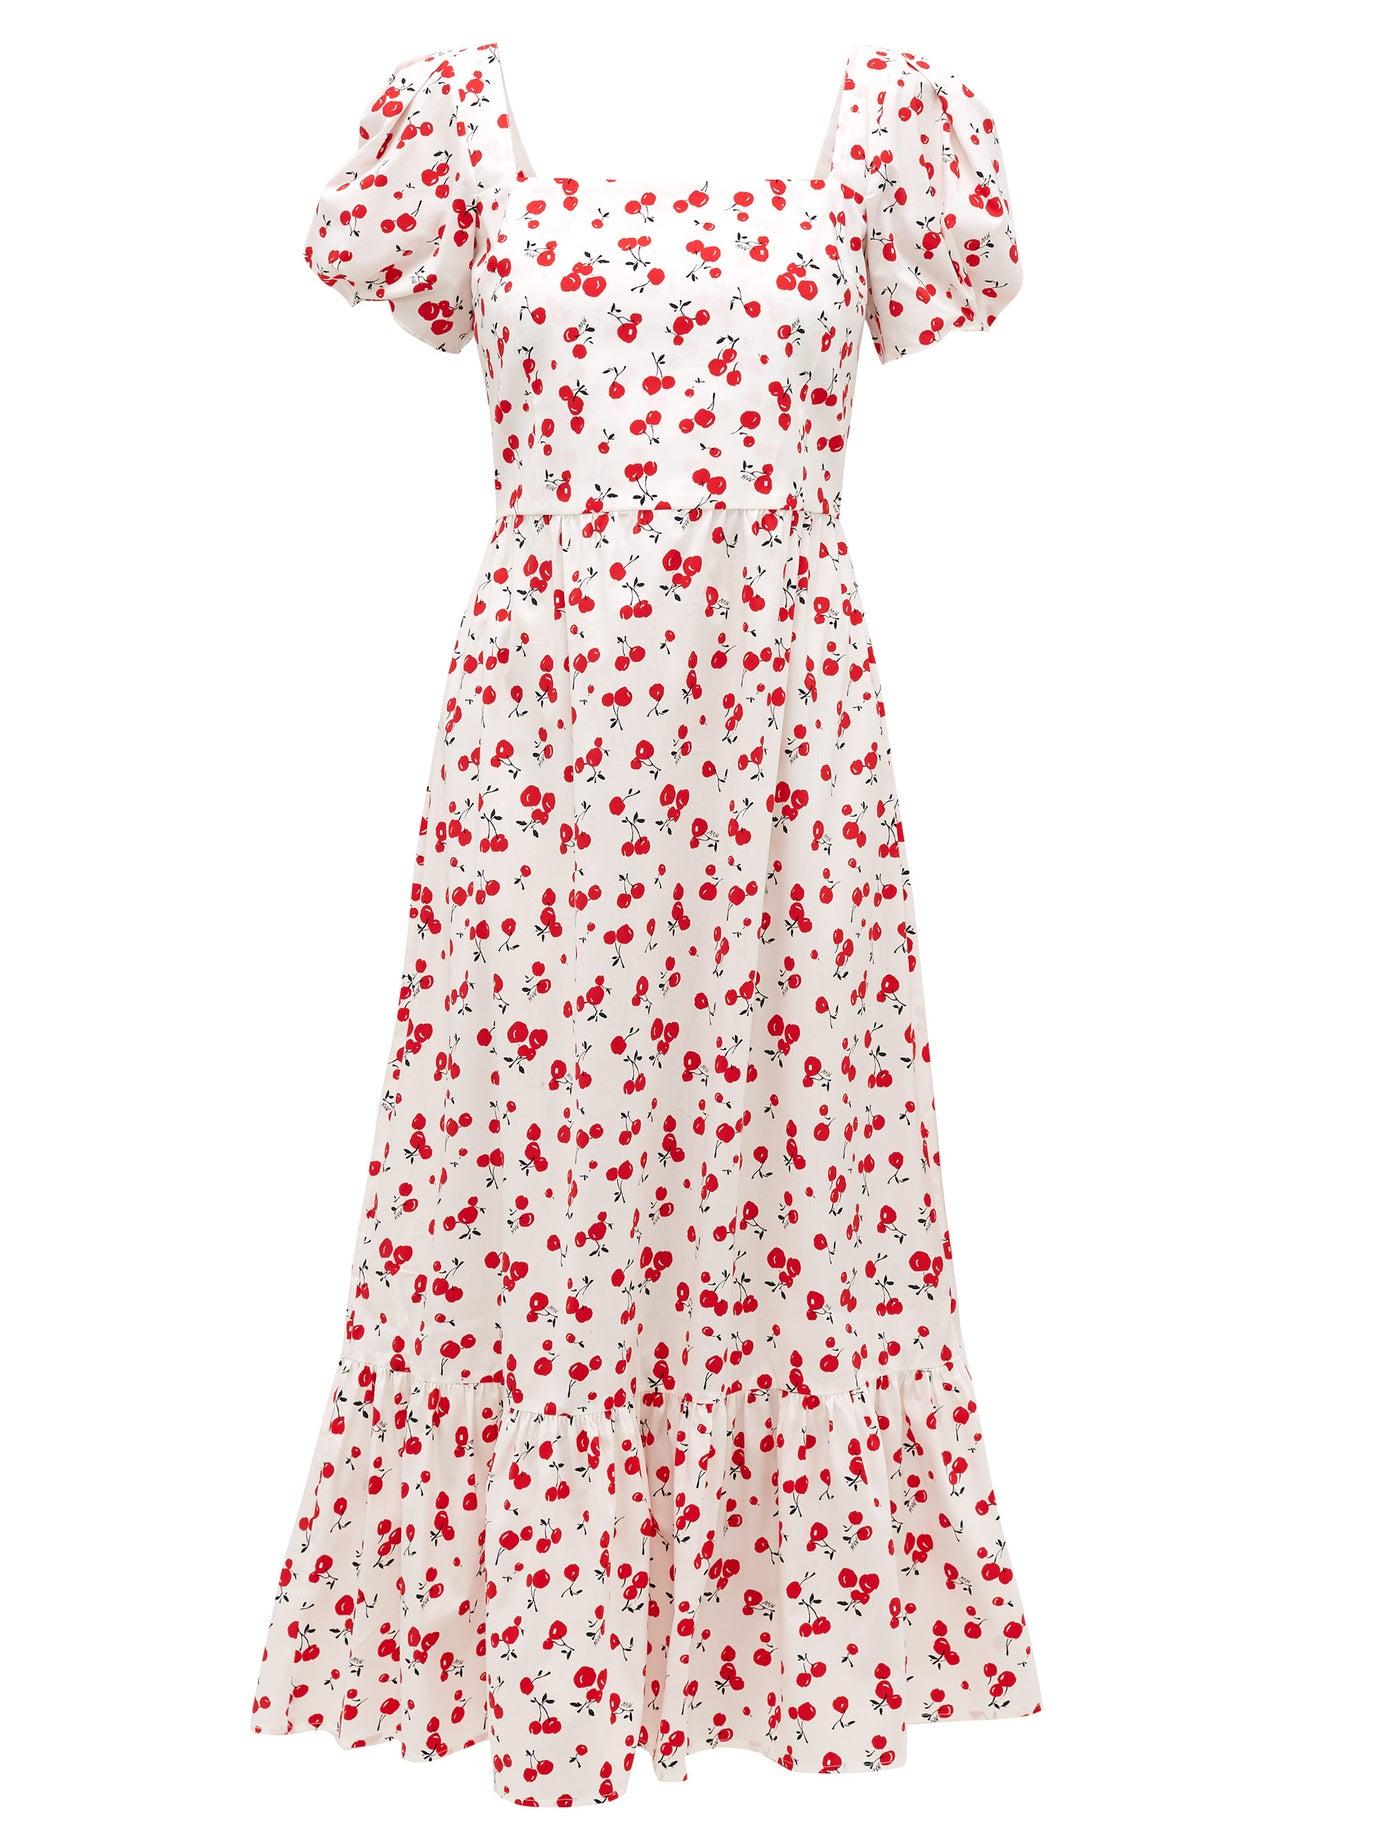 HVN Fromer Cherry-print Cotton-blend Poplin Dress | Lyst